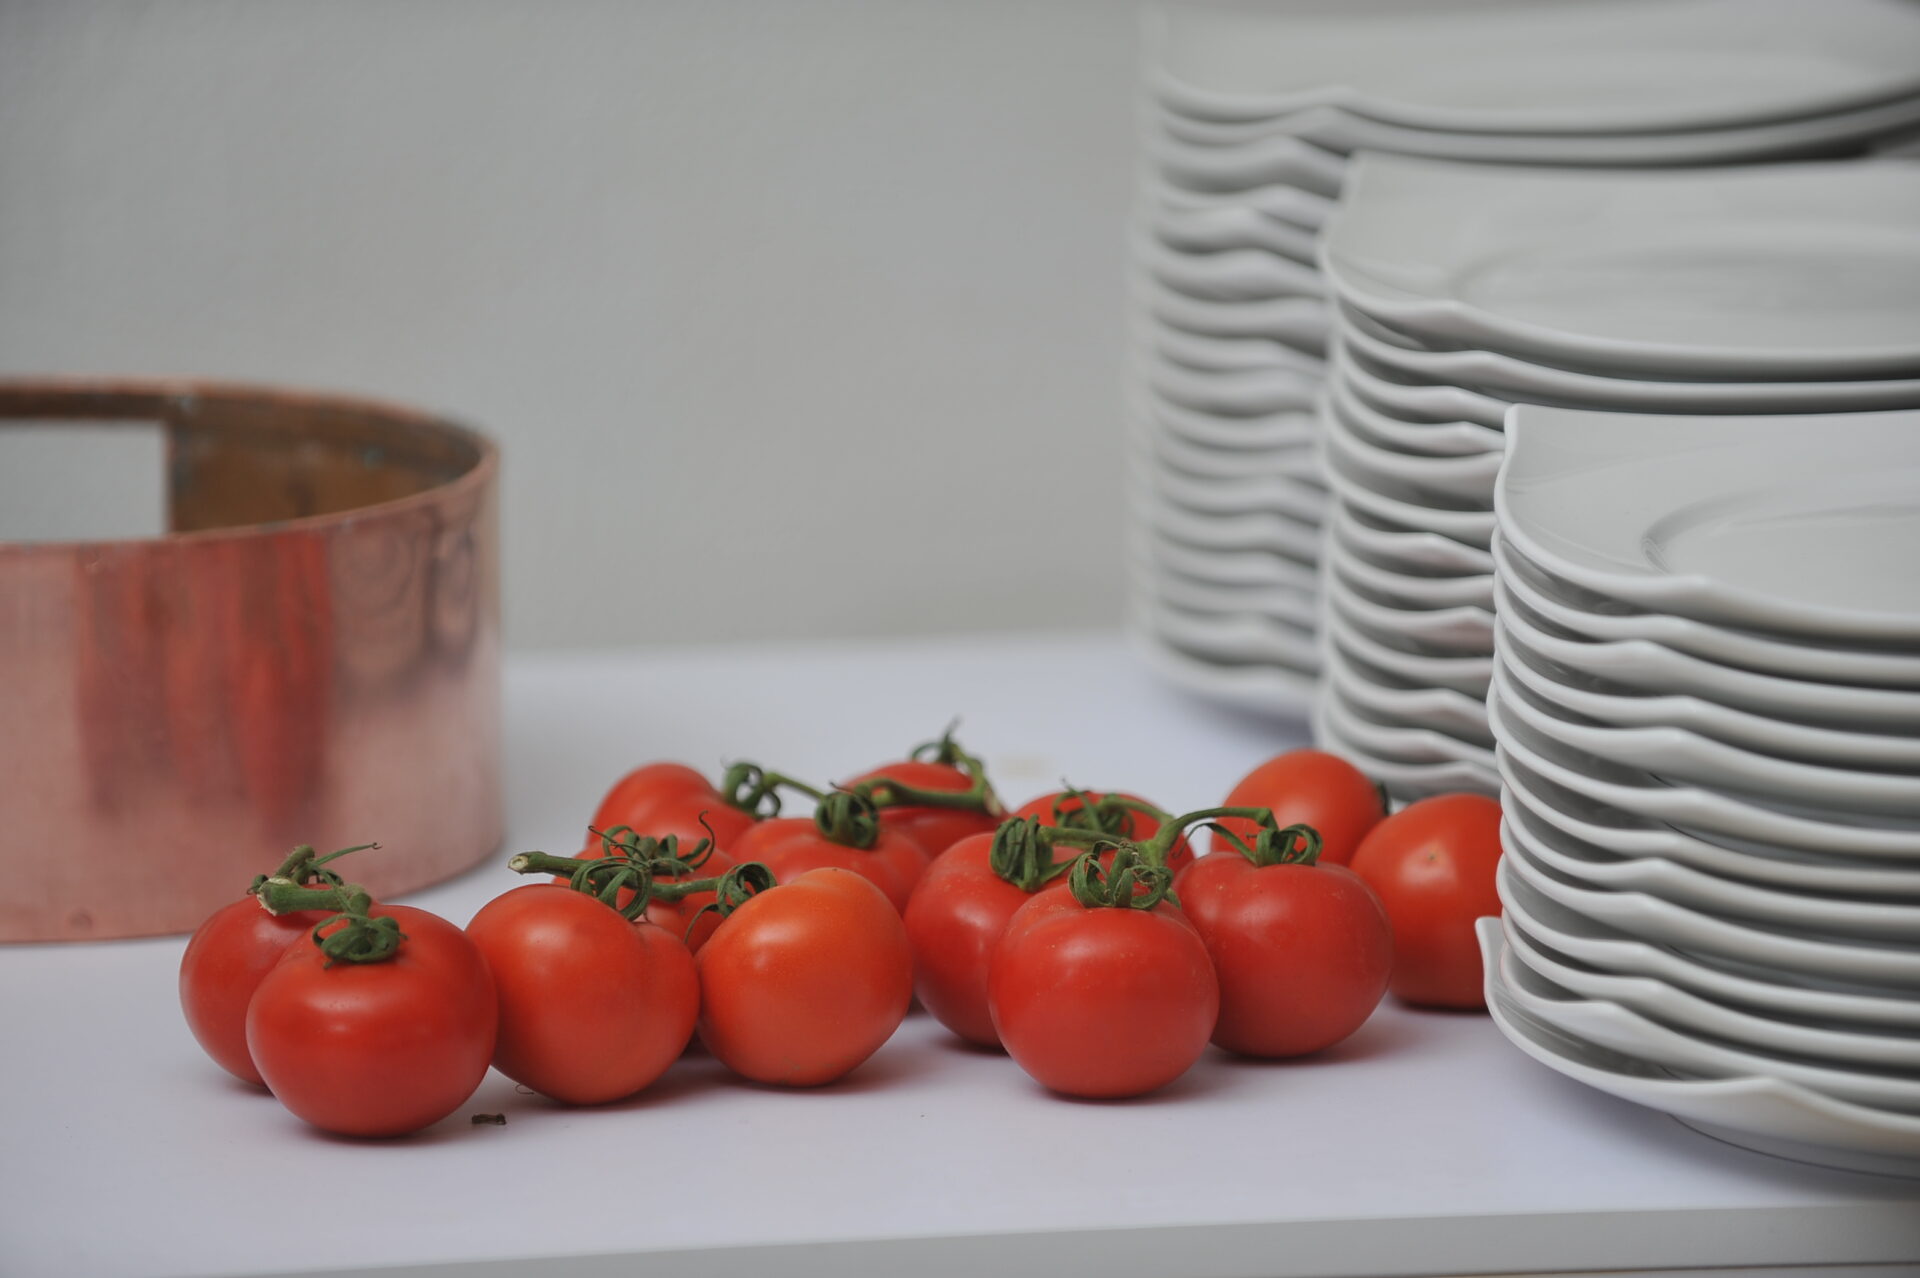 Une nouvelle espèce de tomate qui aide à lutter contre les maladies dégénératives